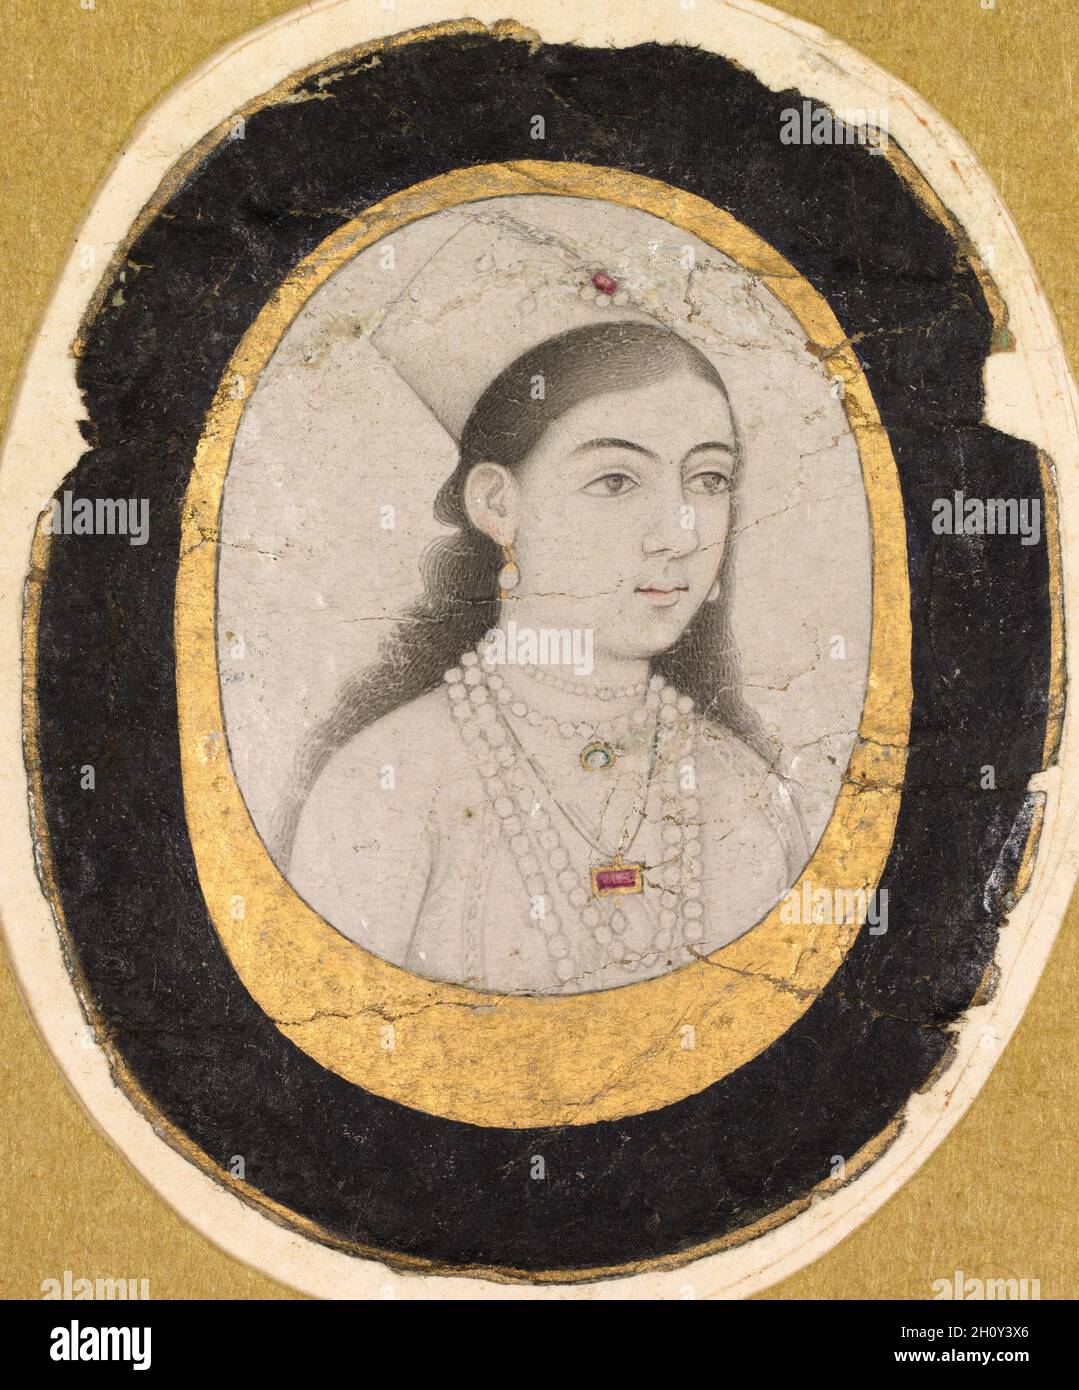 Gioiello Ritratto di una giovane ragazza, c.. 1660. India, Mughal, 17 ° secolo. Disegno a inchiostro con lievi accenti di colore; immagine: 3.3 x 2.4 cm (1 5/16 x 15/16 poll.); totale: 4.6 x 3.8 cm (1 13/16 x 1 1/2 poll.). Questo piccolo disegno di una ragazza giovane che indossa un cappuccio chaghtai può essere una somiglianza di un membro di una famiglia reale o cortesemente Mughal. La precisione della ritrattistica femminile è un problema irrisolto nell'arte di Mughal, in quanto ci sono molti dipinti di donne che sembrano essere studi di bellezza femminile piuttosto che registrazioni visive di persone reali. Tuttavia, poiché la ragazza in questo dipinto non è un tipo idealizzato, è più Foto Stock